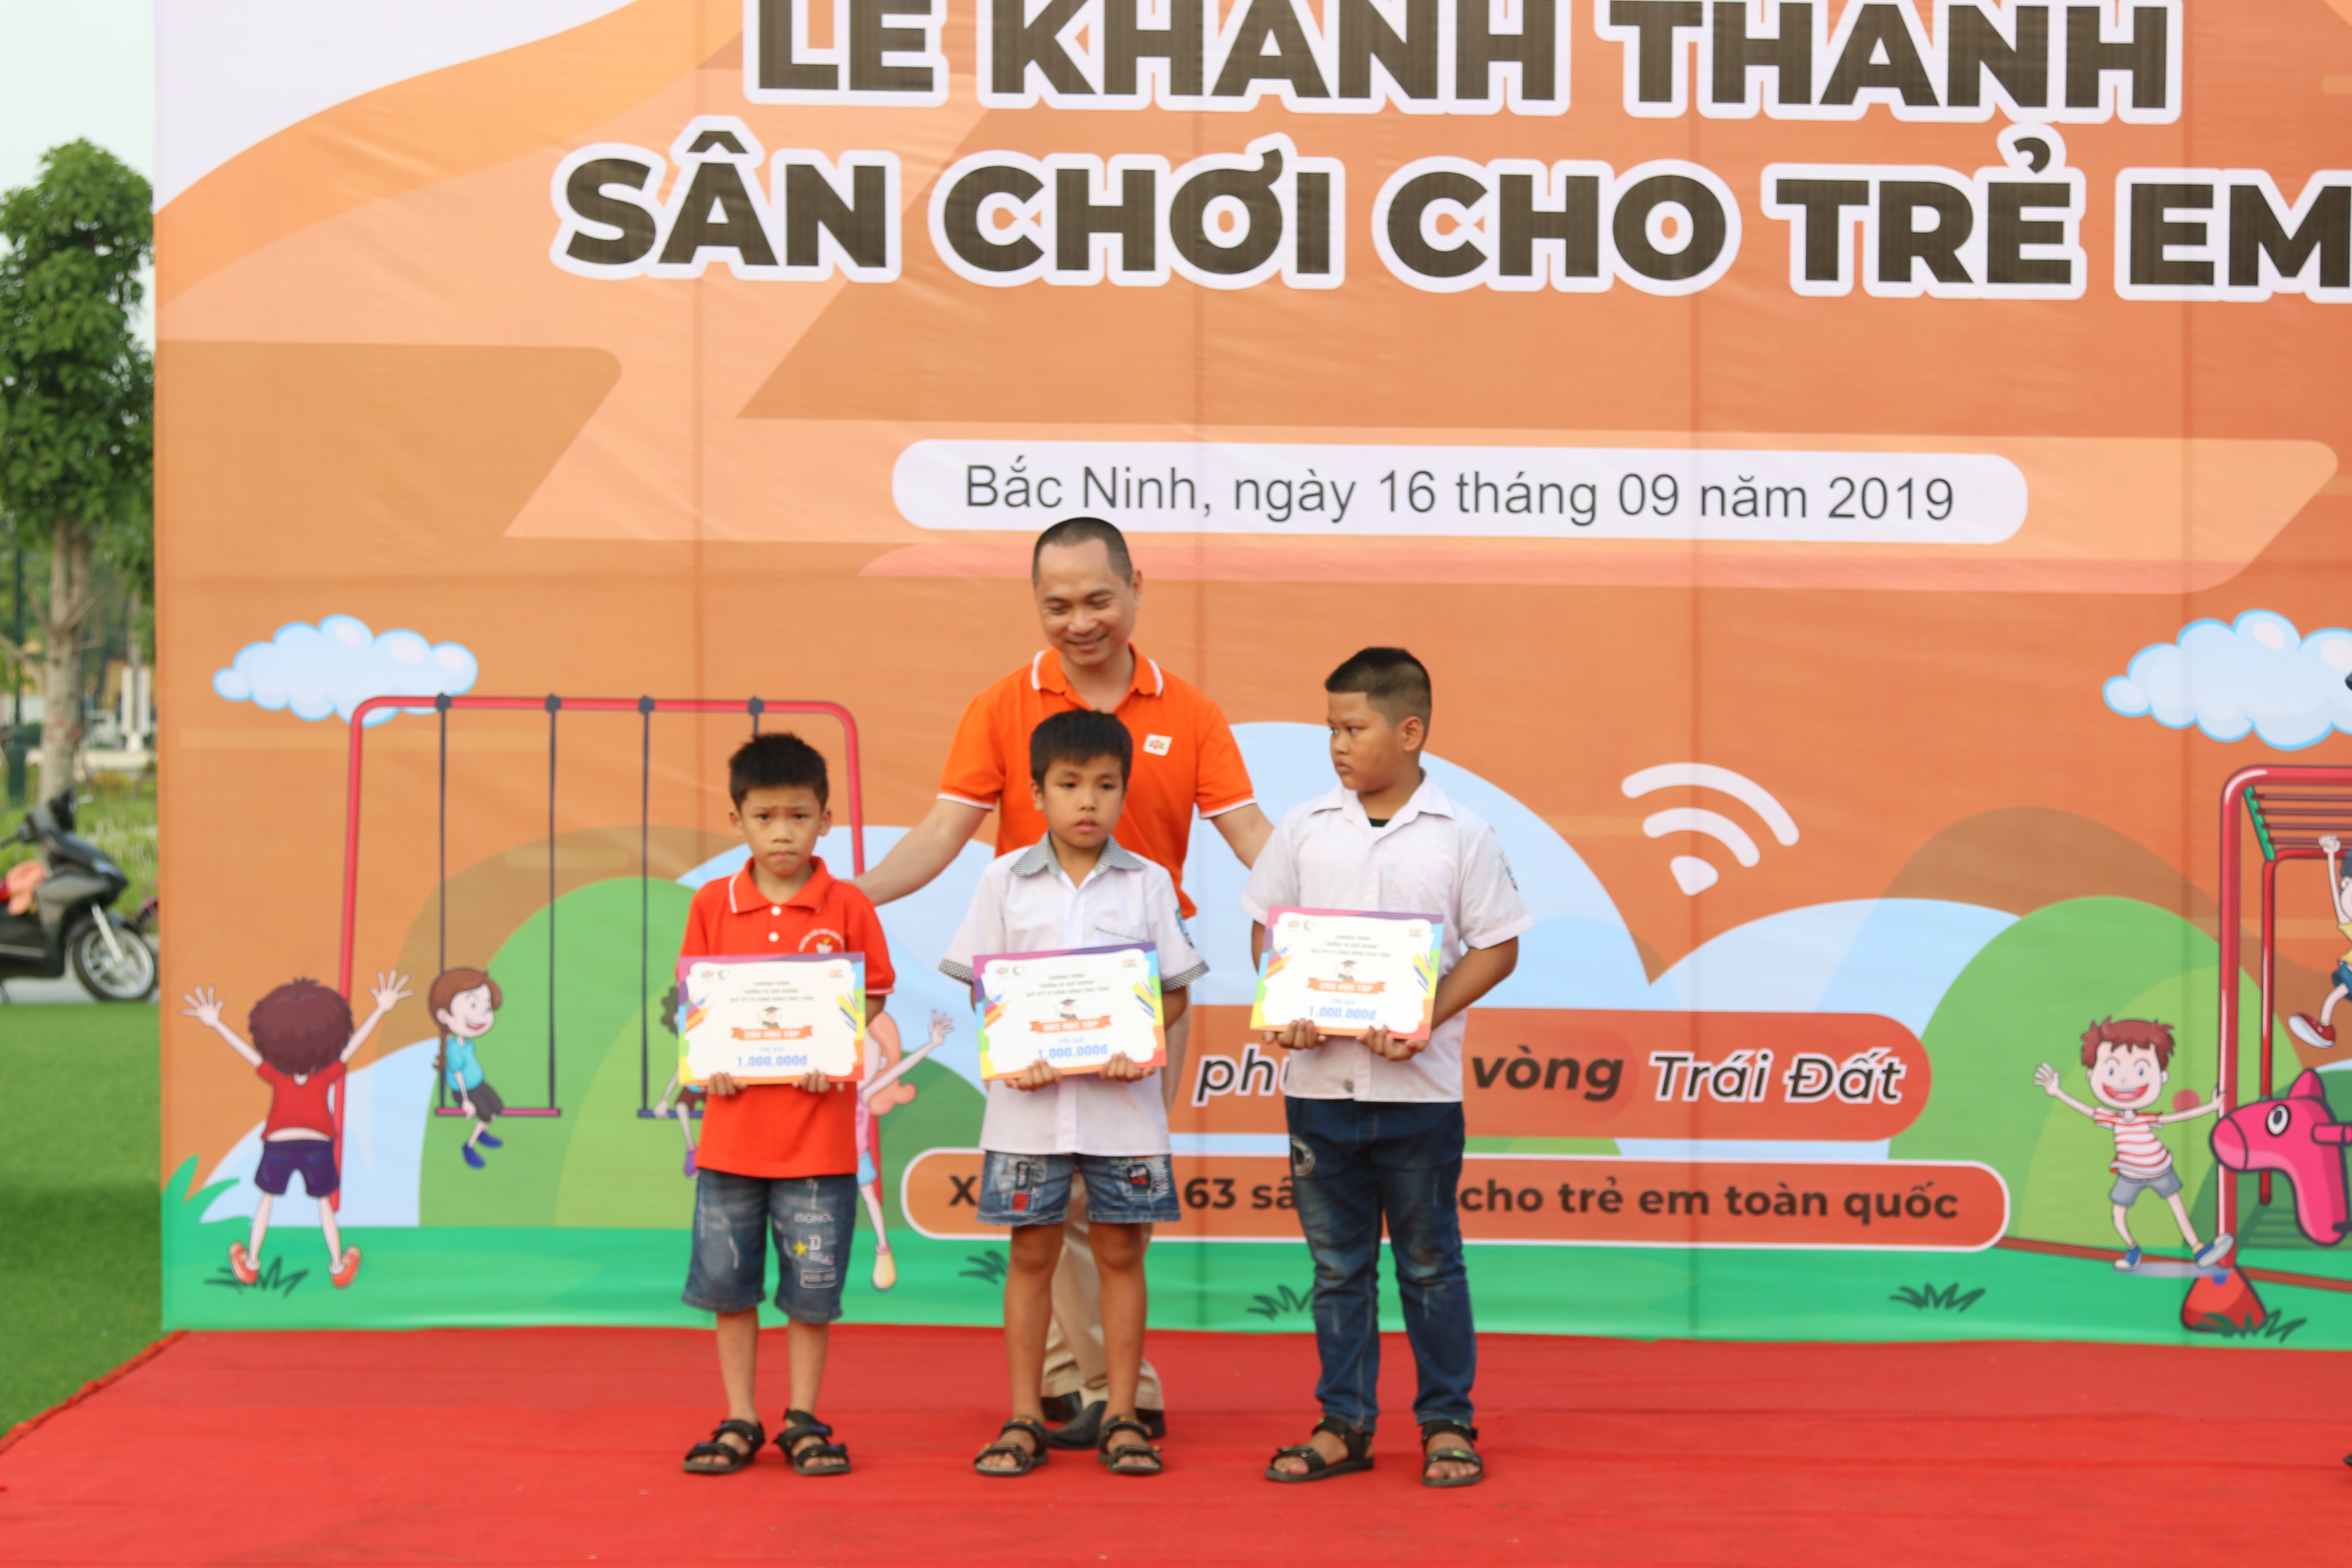  PTGĐ FPT Telecom Hoàng Trung Kiên trao tặng 5 suất quà và góc học tập cho các trẻ em có hoàn cảnh khó khăn. Mỗi phần quà trị giá 1 triệu đồng.